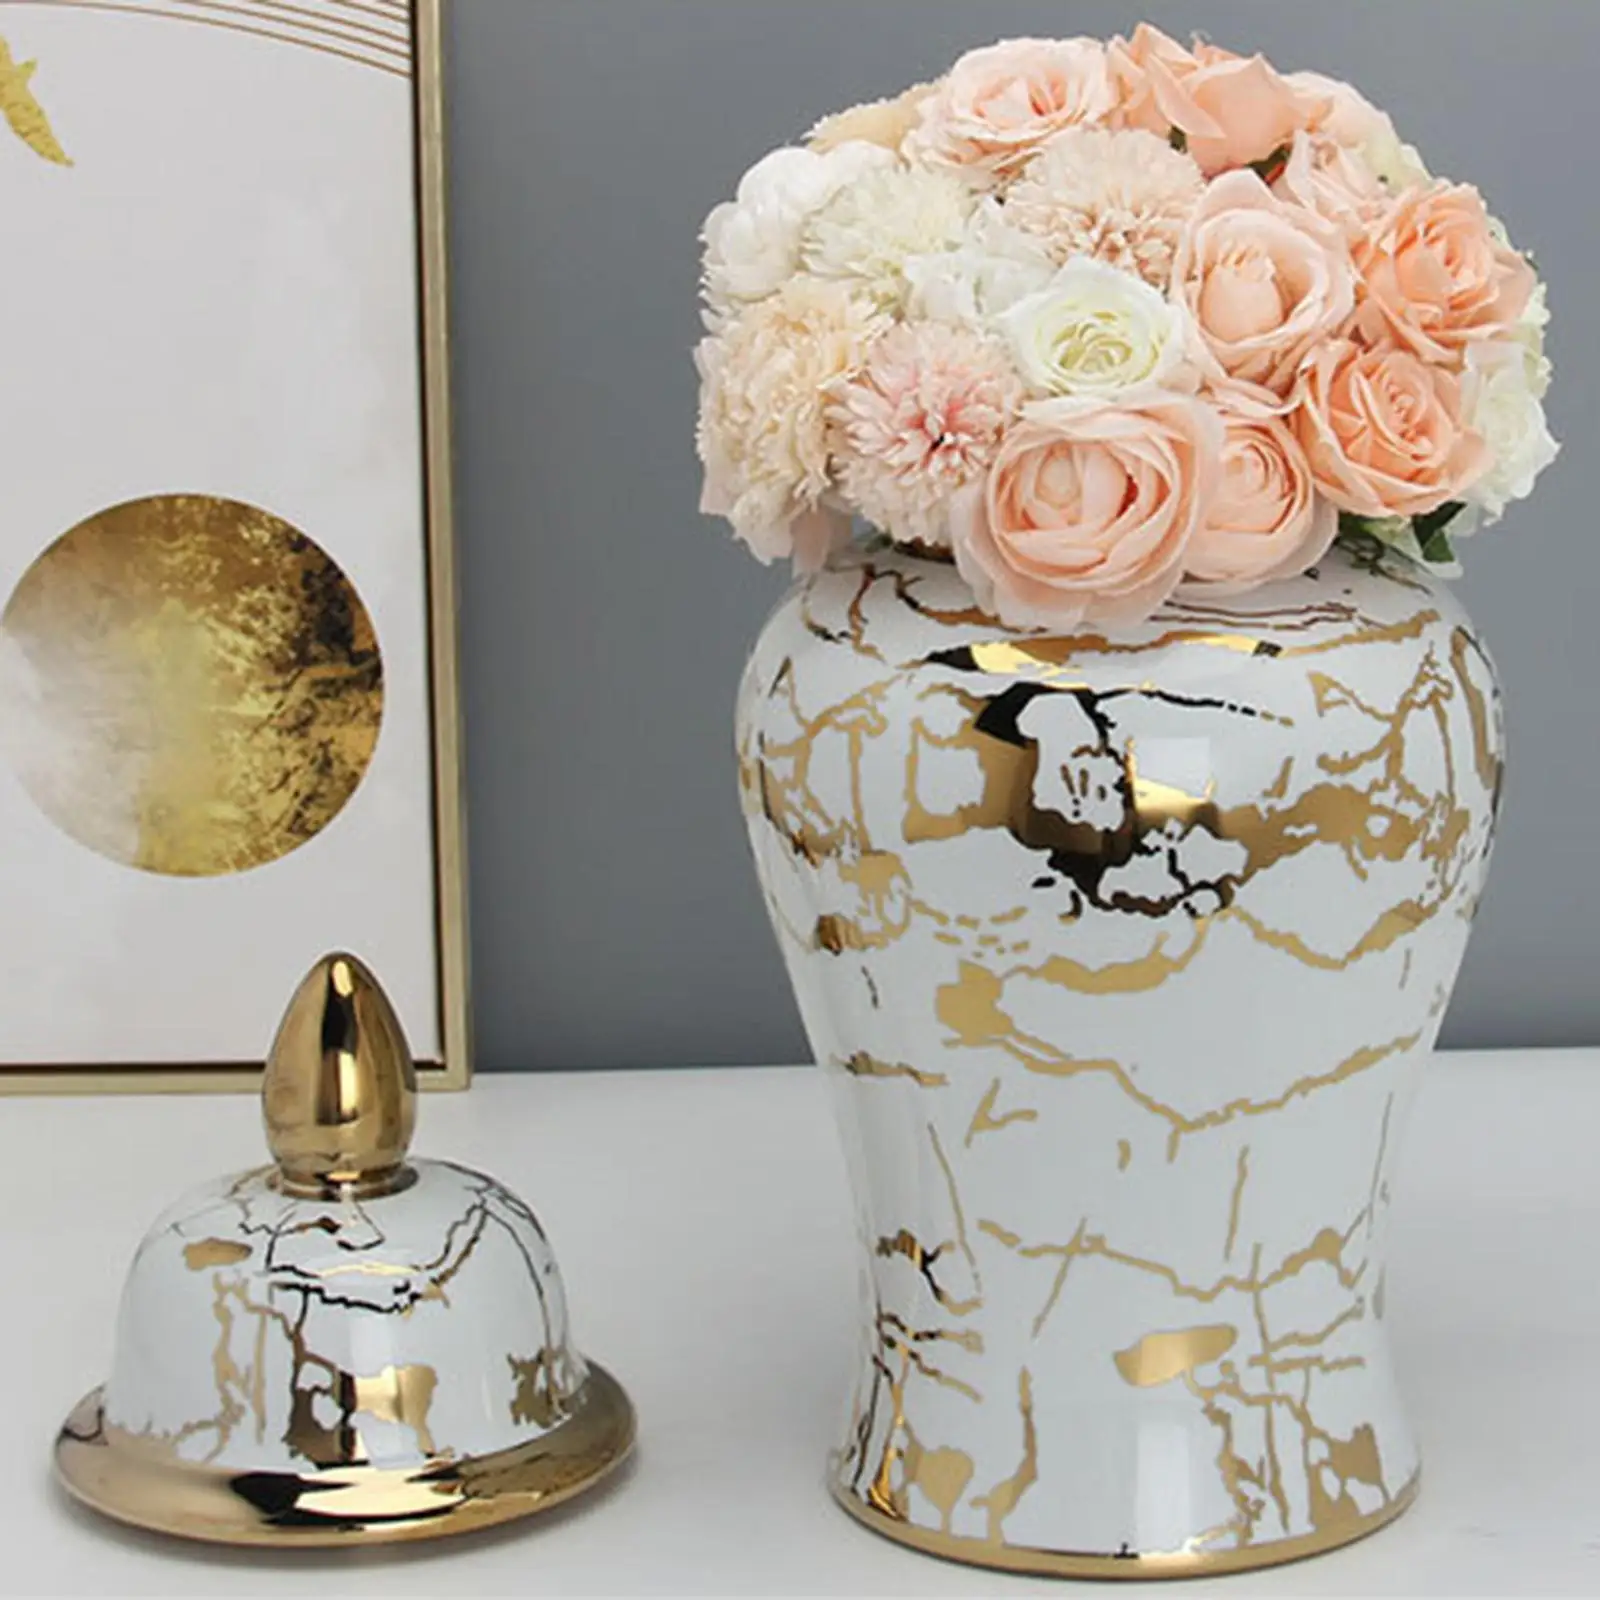 Flower Vase Storage Jar with Lid Temple Jar Desktop Tea Tin Ceramic Ginger Jars for Home Accent Centerpiece Weddings Party Desk